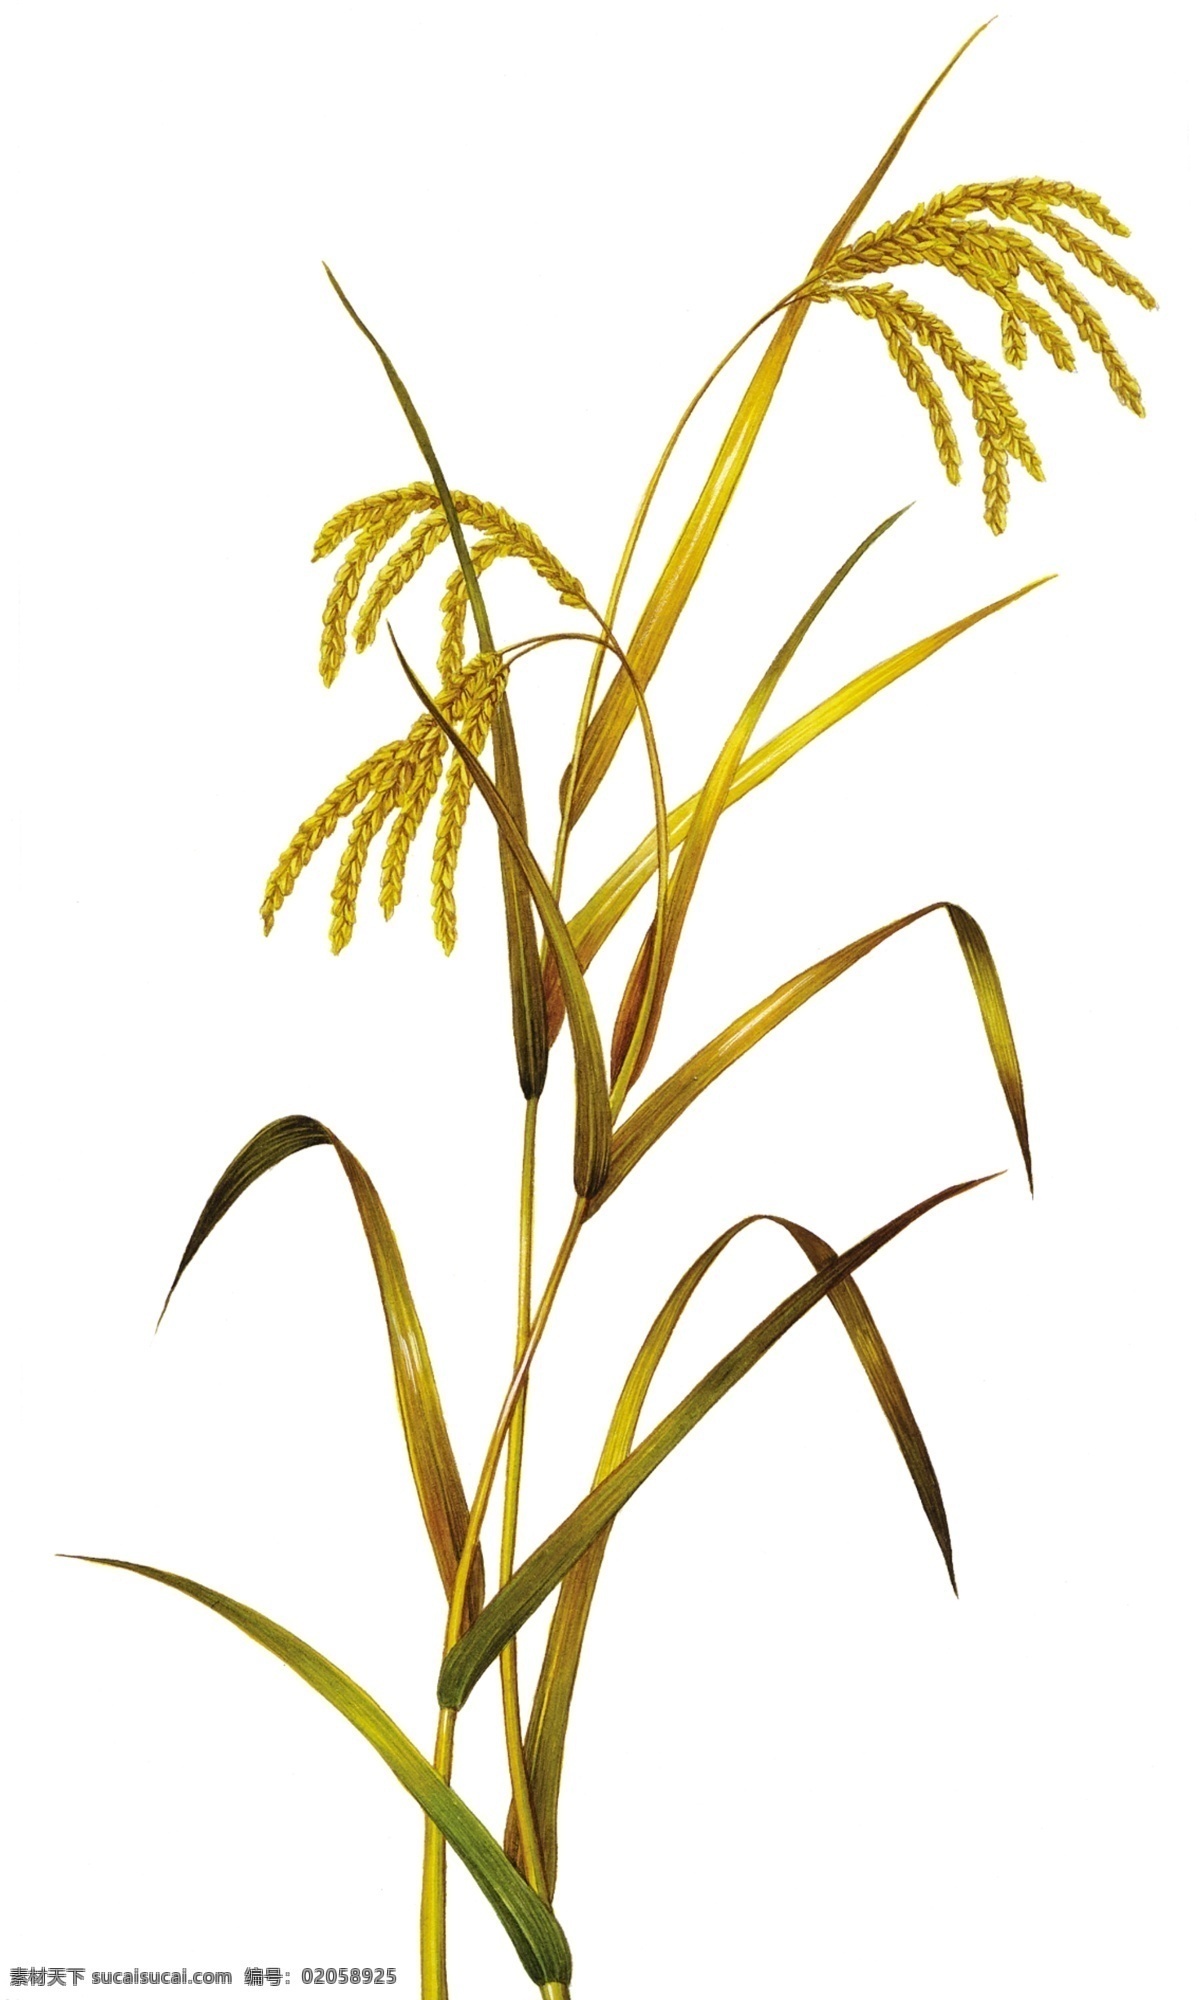 农作物水稻 丰收 水稻 成熟的水稻 黄色 金黄 黄灿灿 广告素材